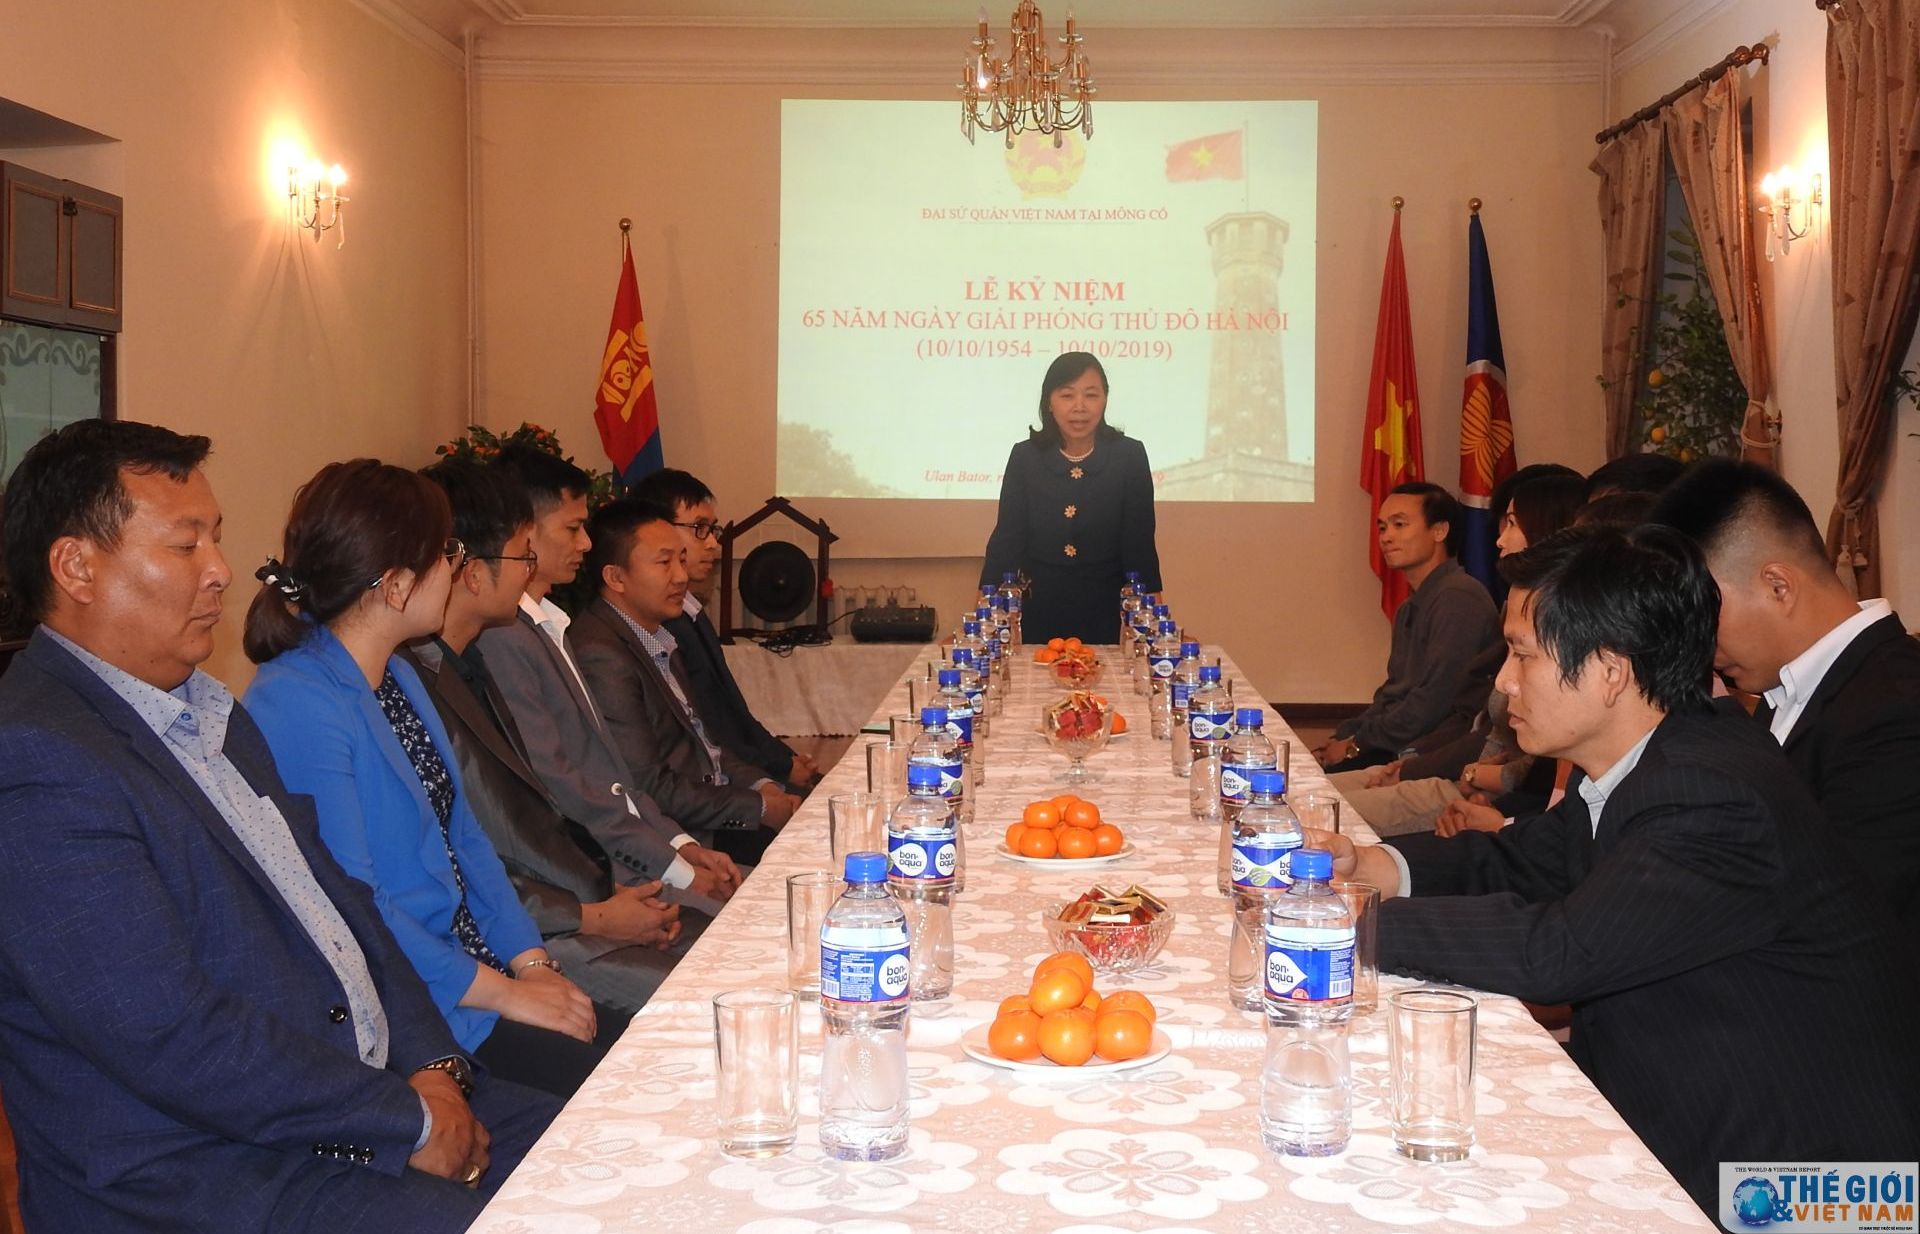 Kỷ niệm 65 năm ngày giải phóng Thủ đô Hà Nội tại Mông Cổ